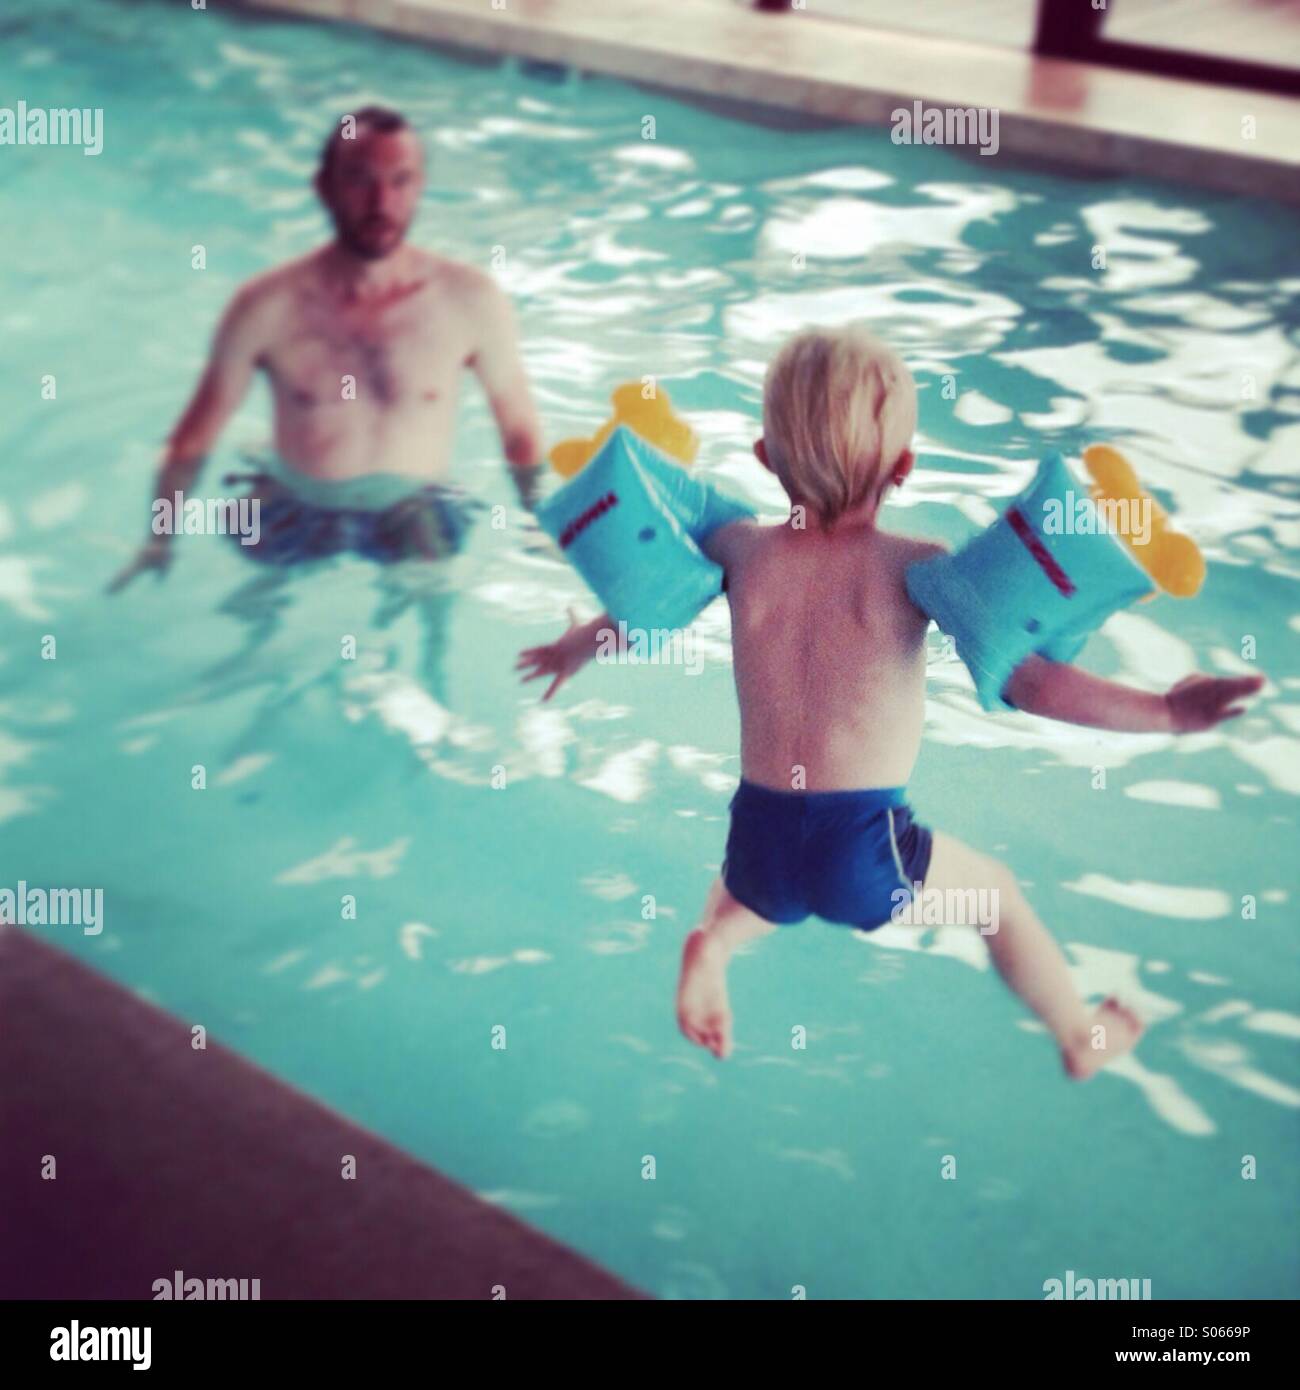 Junge springt in pool Stockfoto